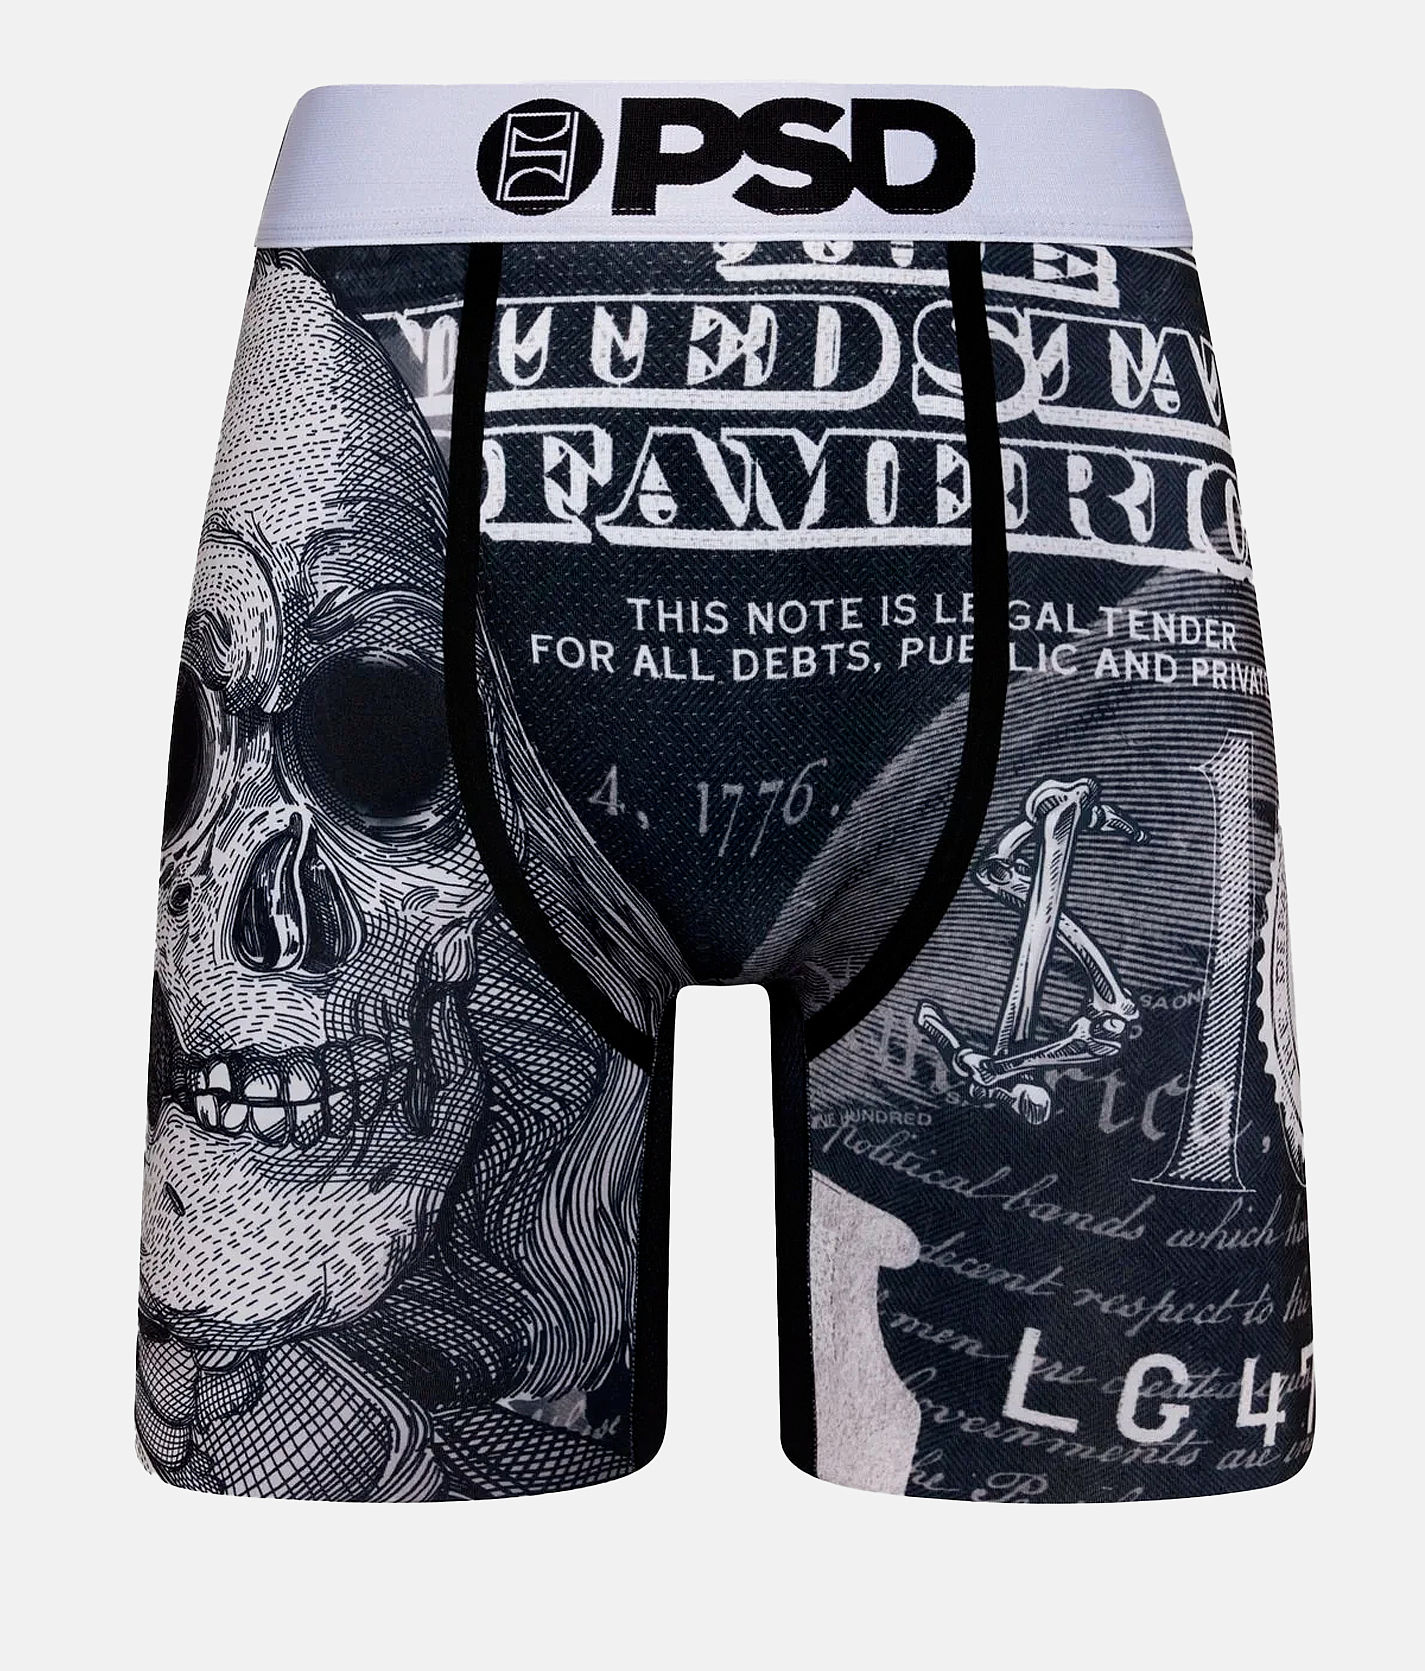 Men's PSD Multi Playboy 3-Pack Boxer Briefs - L 